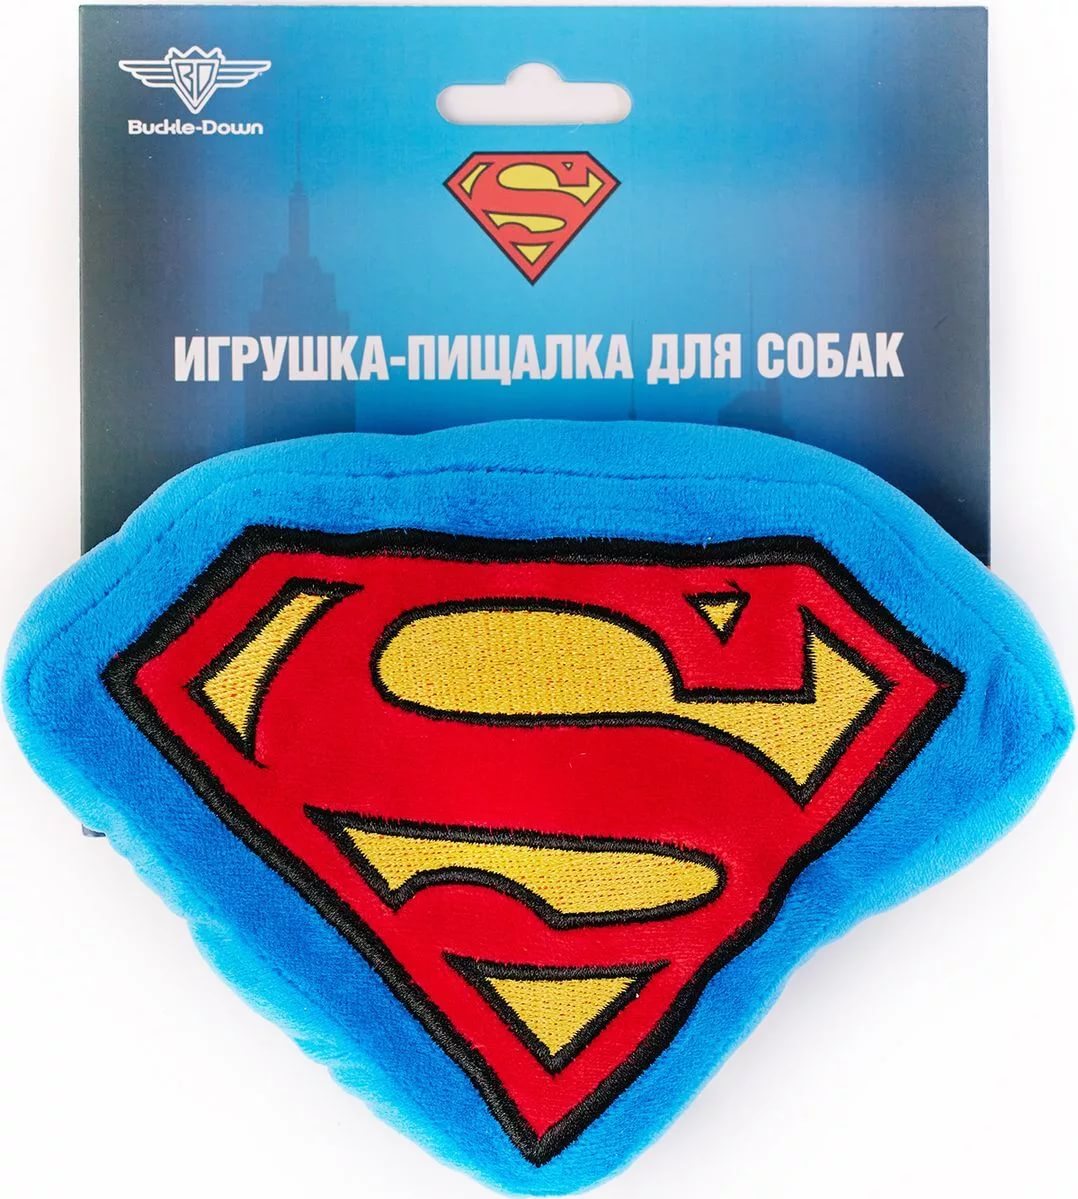 Buckle-Down Супермен мультицвет игрушка-пищалка от зоомагазина Дино Зоо